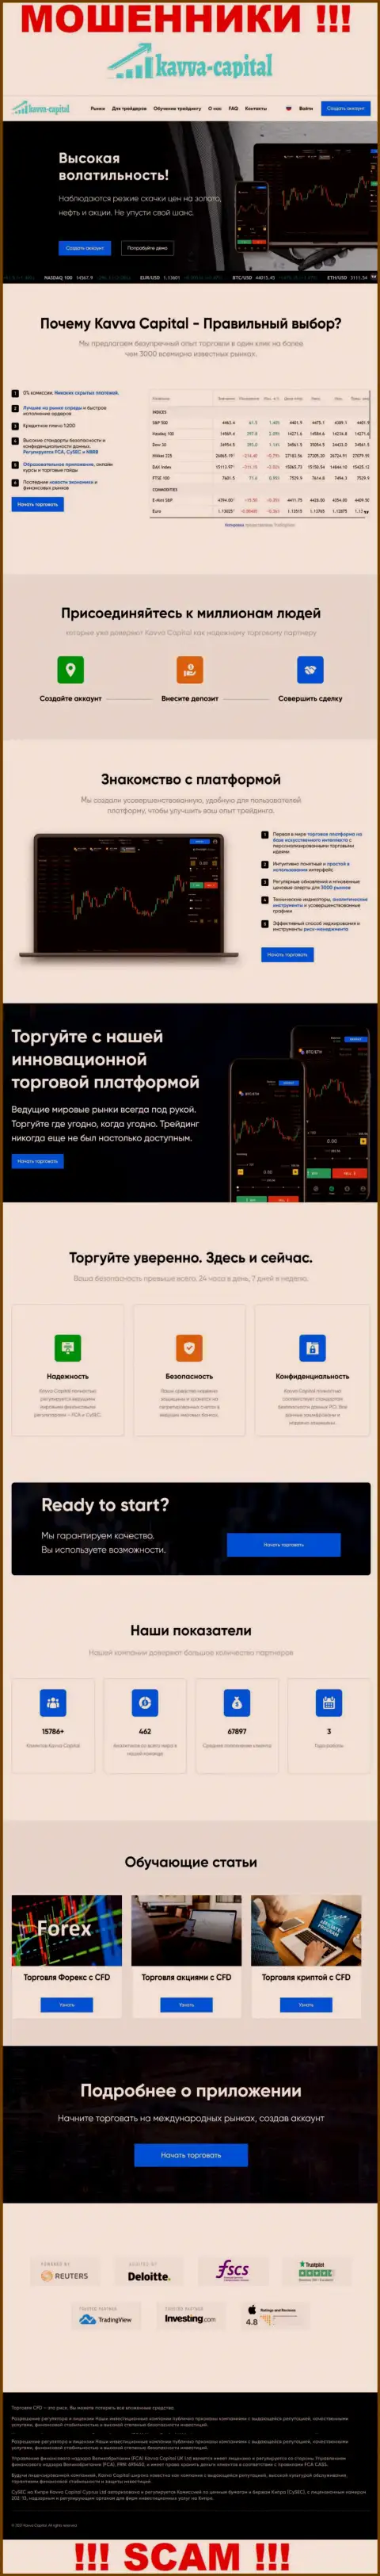 Официальный портал мошенников Кавва-Капитал Ком, заполненный сведениями для наивных людей